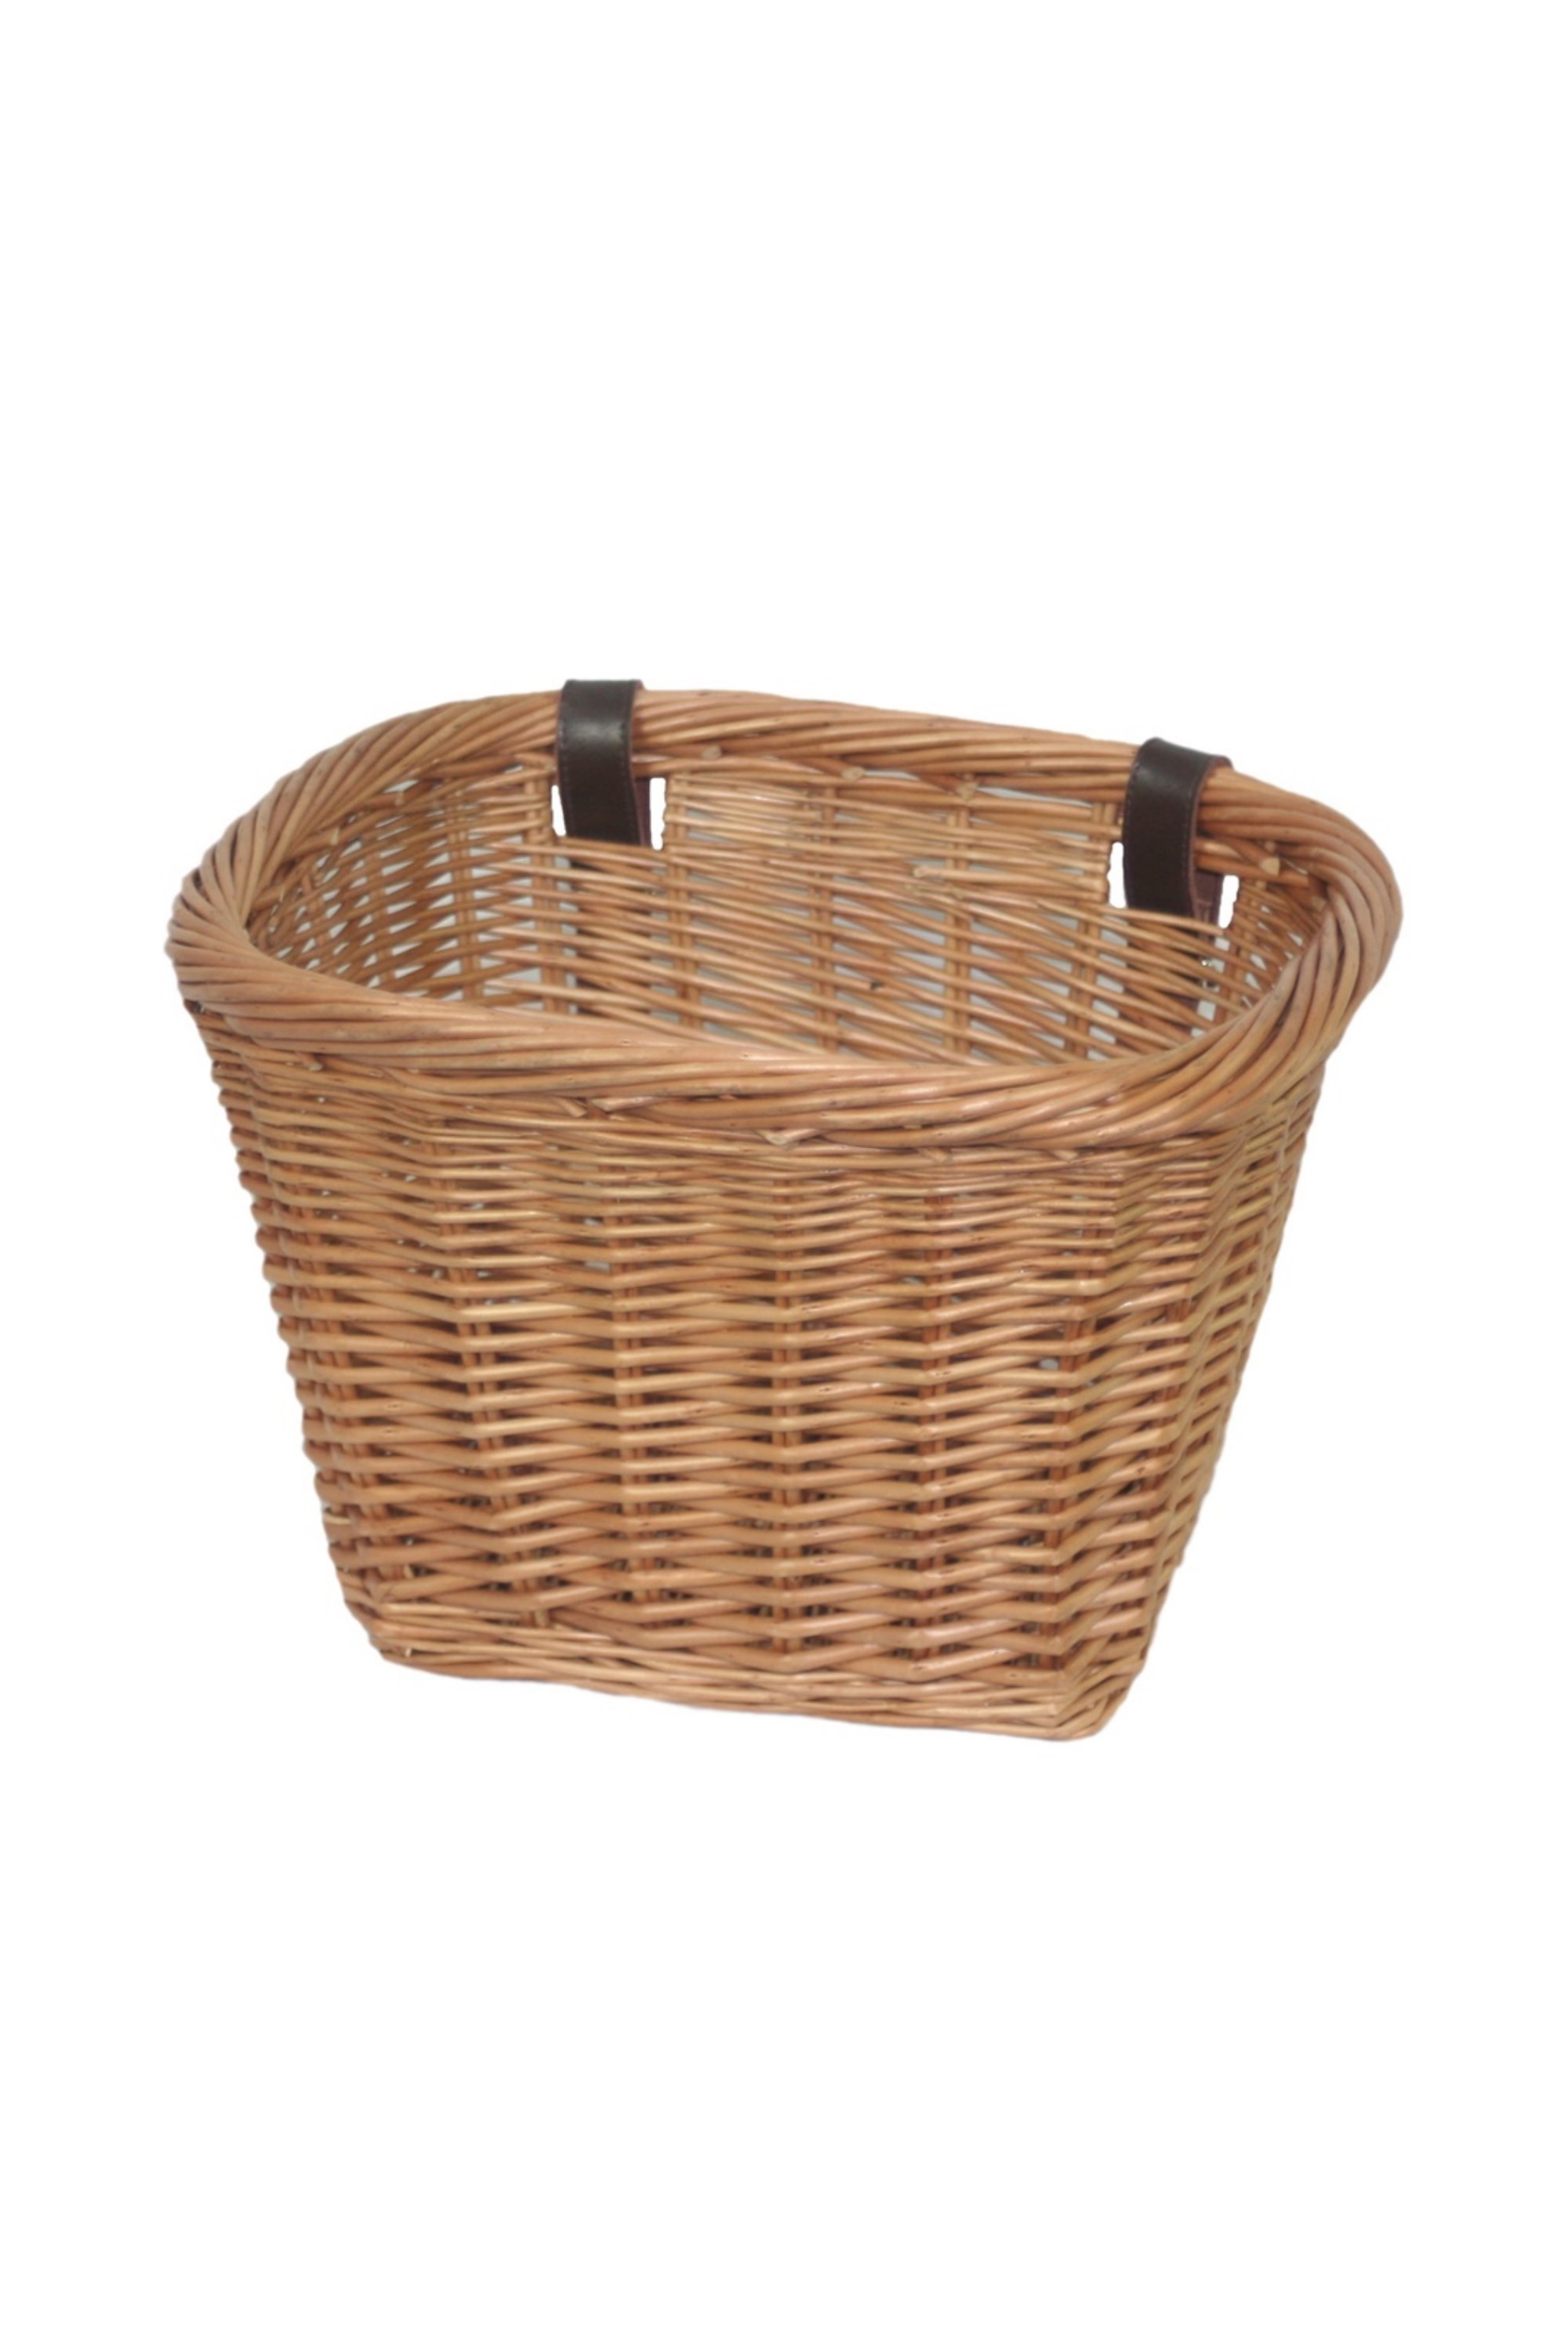 Wicker Heritage Rectangular Bicycle Basket -